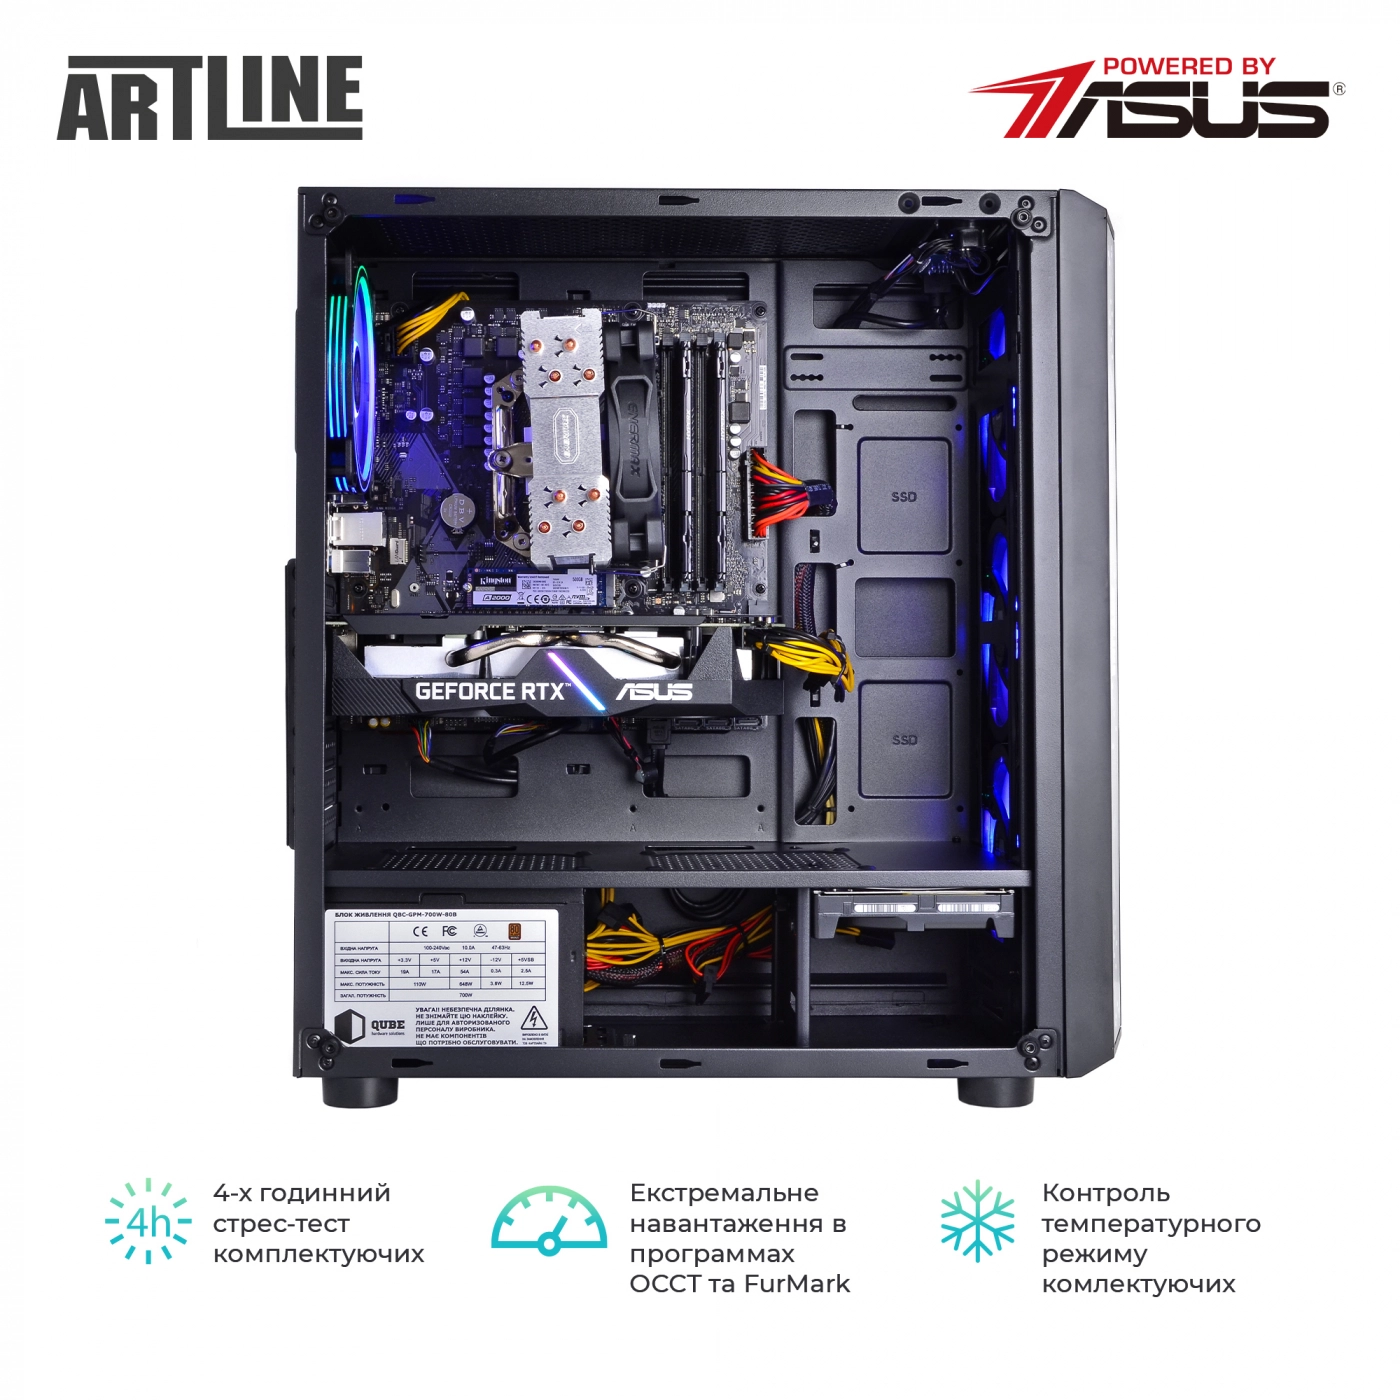 Купить Компьютер ARTLINE Gaming X76v01 - фото 8